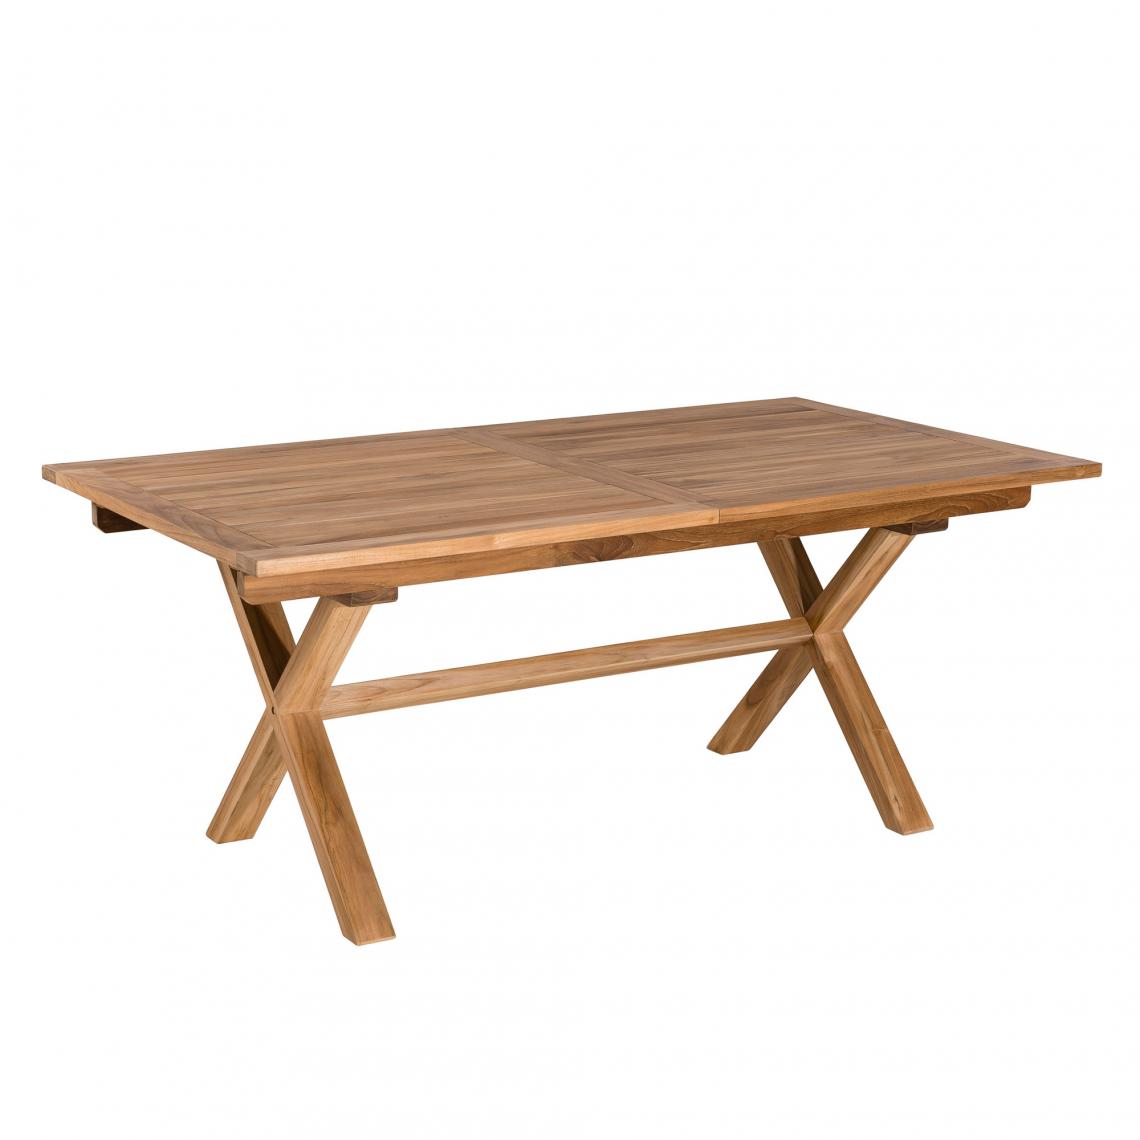 MACABANE - Table rectangulaire extensible pieds croisés en teck massif - Teck - Tables de jardin